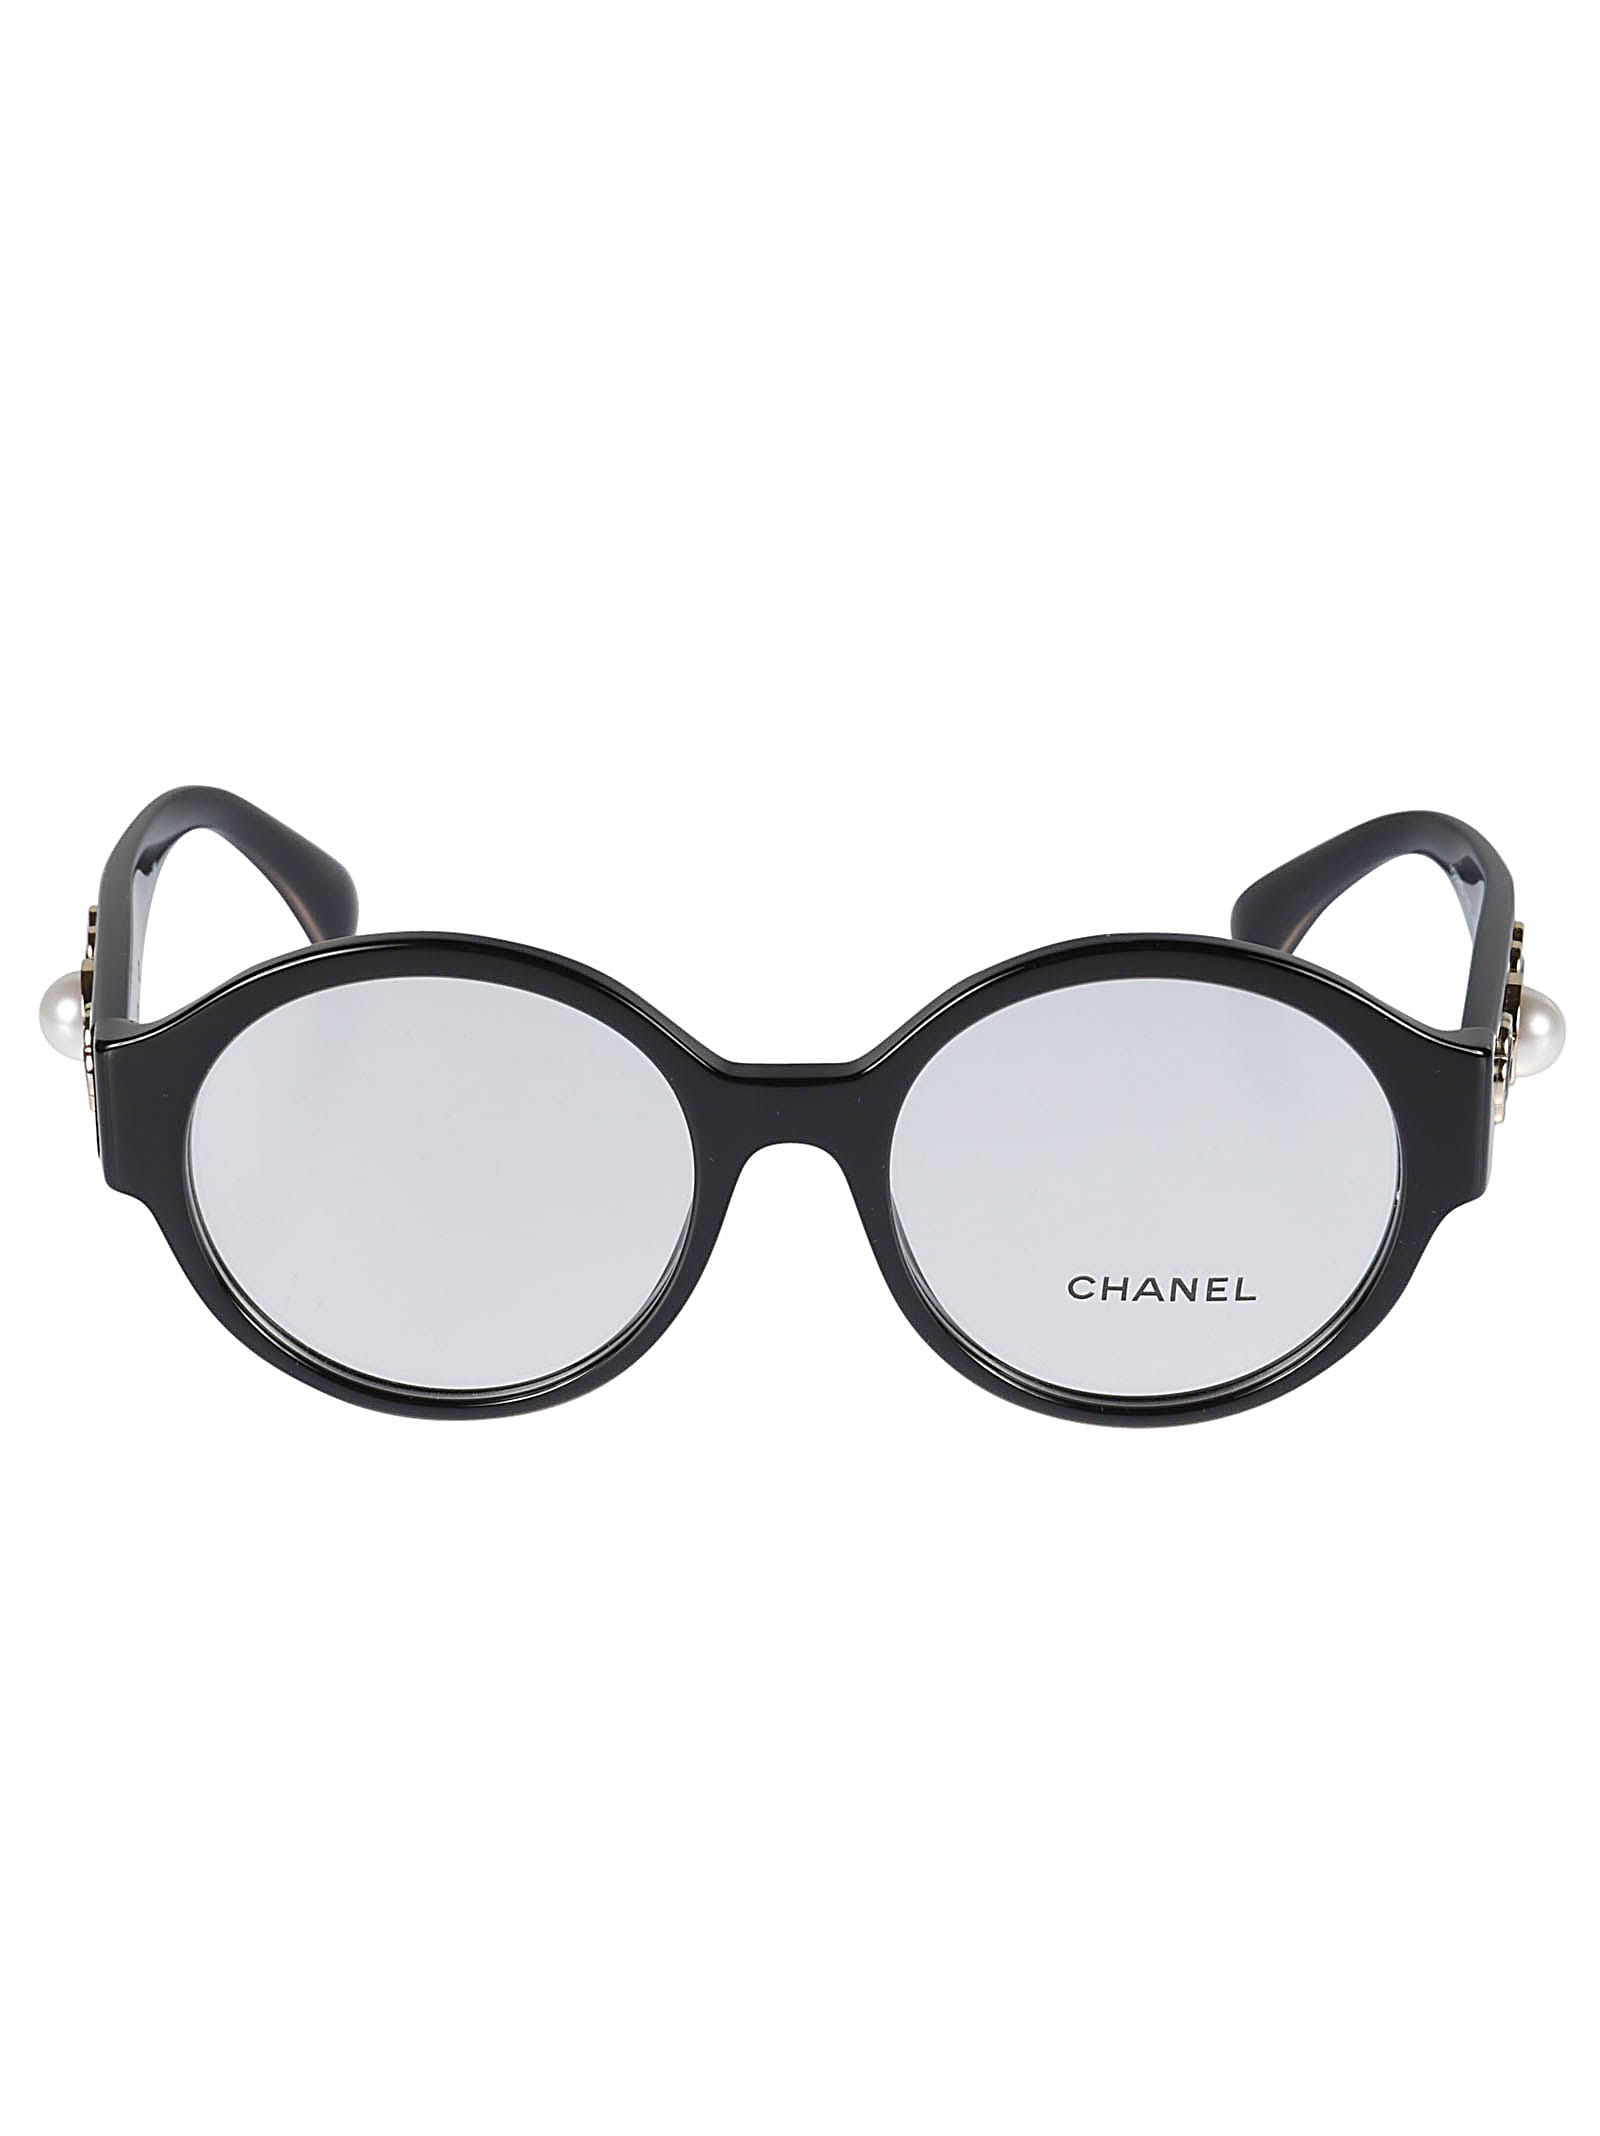 Chanel Embellished Round Eye Glasses | Smart Closet